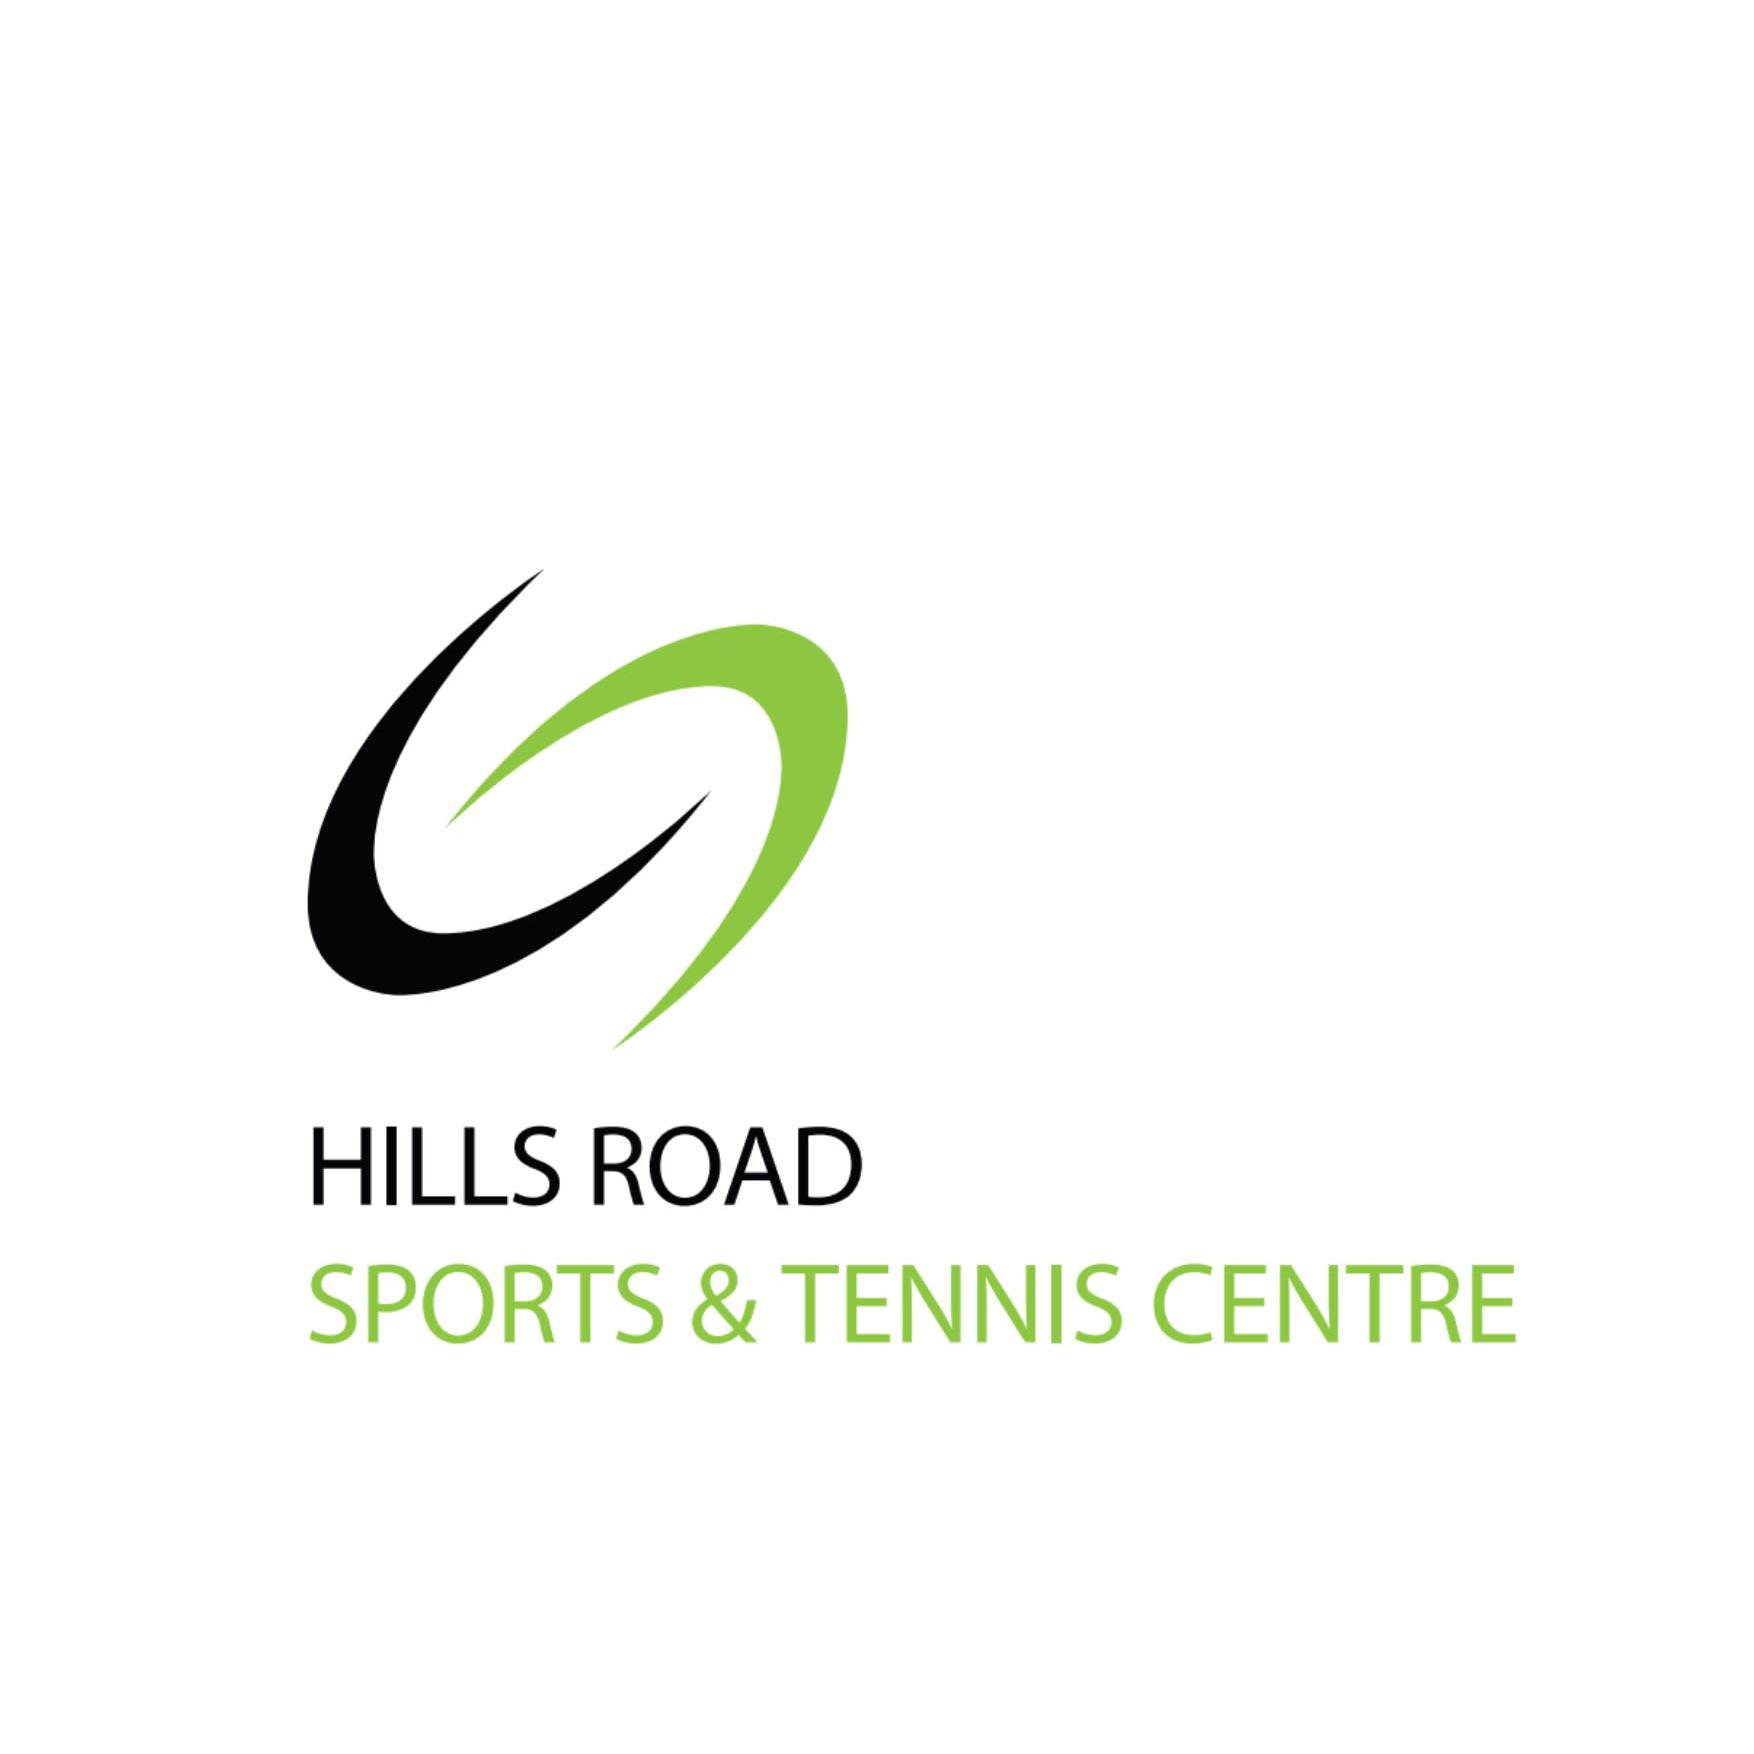 Hills Road Sports & Tennis Centre - Cambridge, Cambridgeshire CB2 8PF - 01223 500009 | ShowMeLocal.com